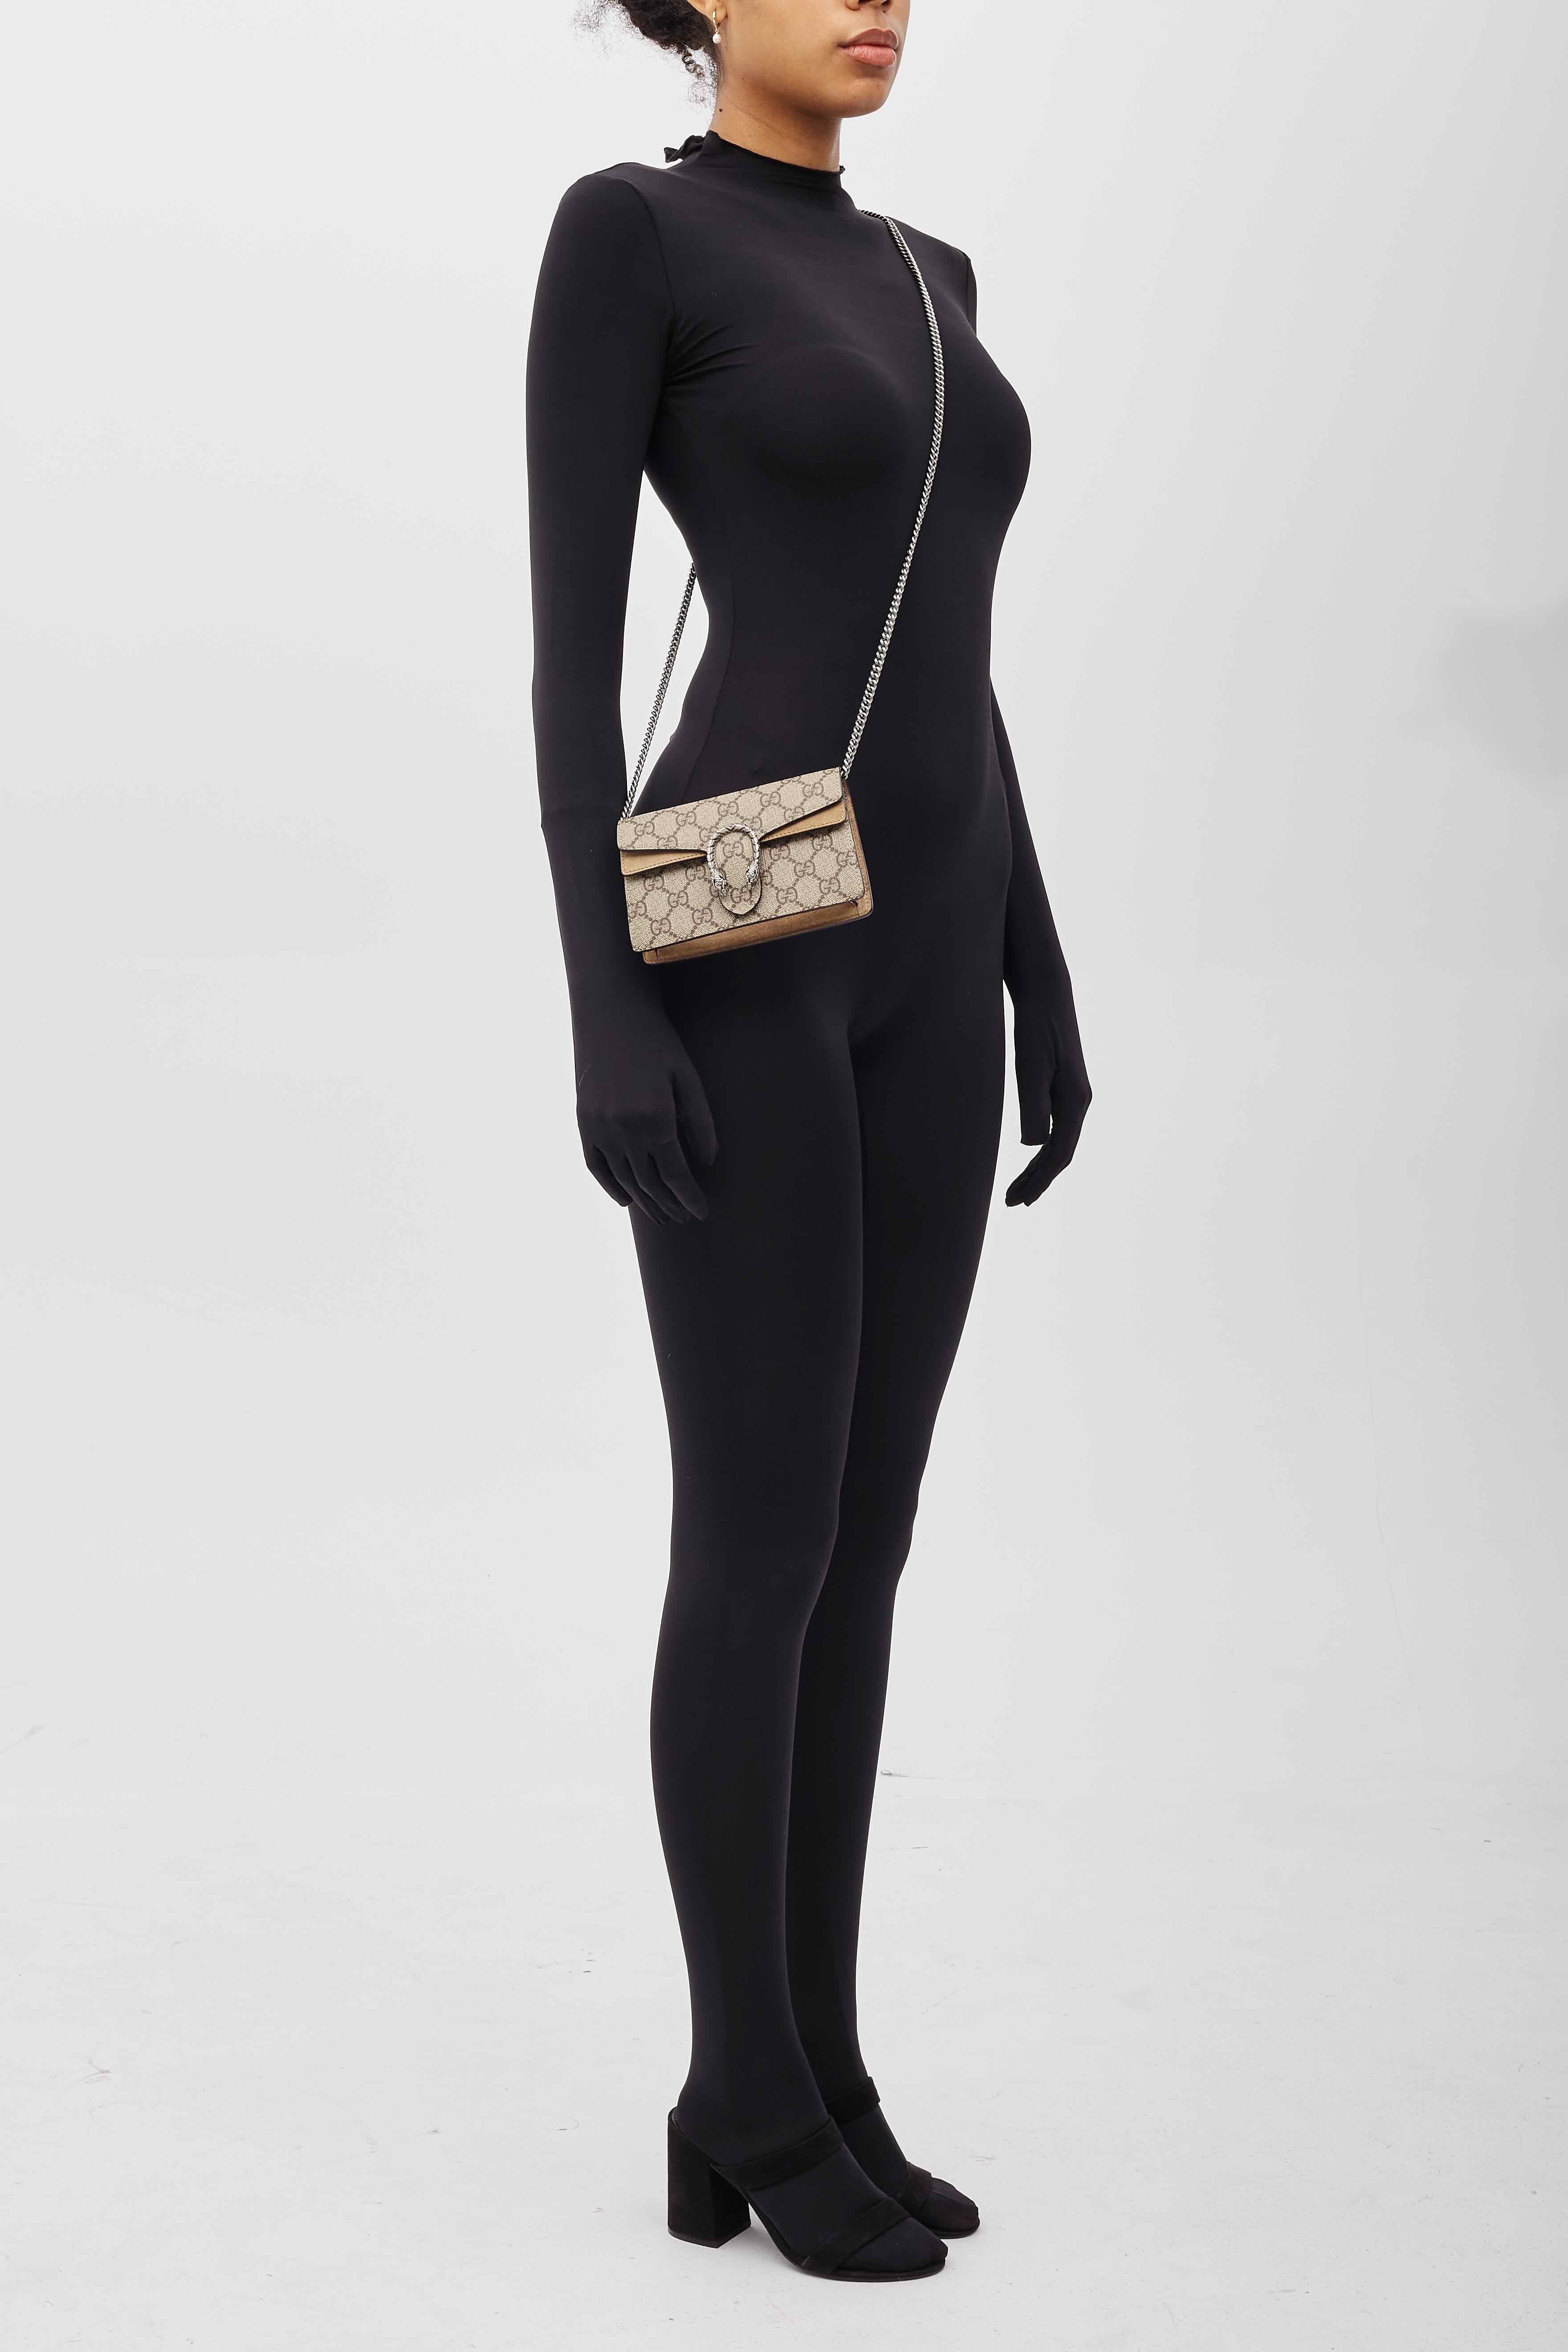 Gucci Super Mini Dionysus Monogram GG Supreme Bag  For Sale 6